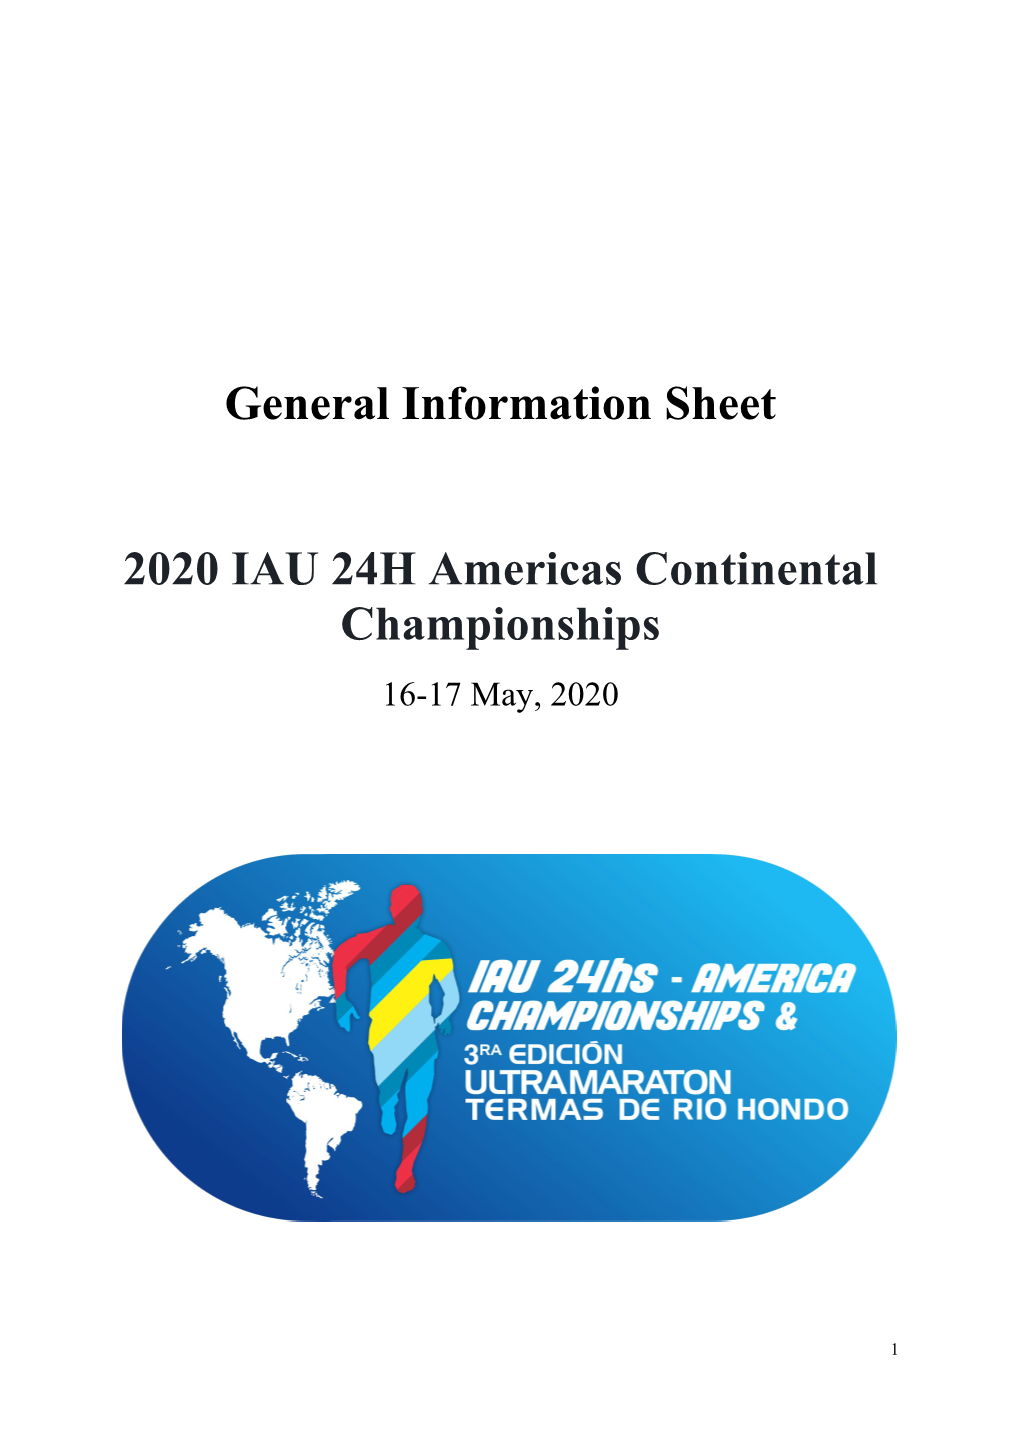 General Information Sheet 2020 IAU 24H Americas